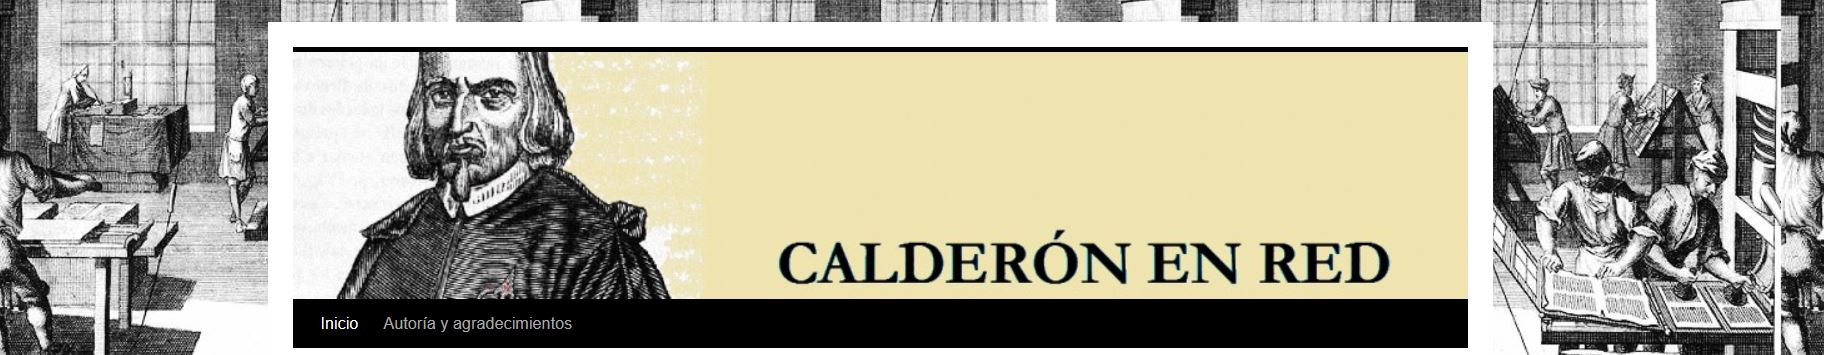 Calderón en red